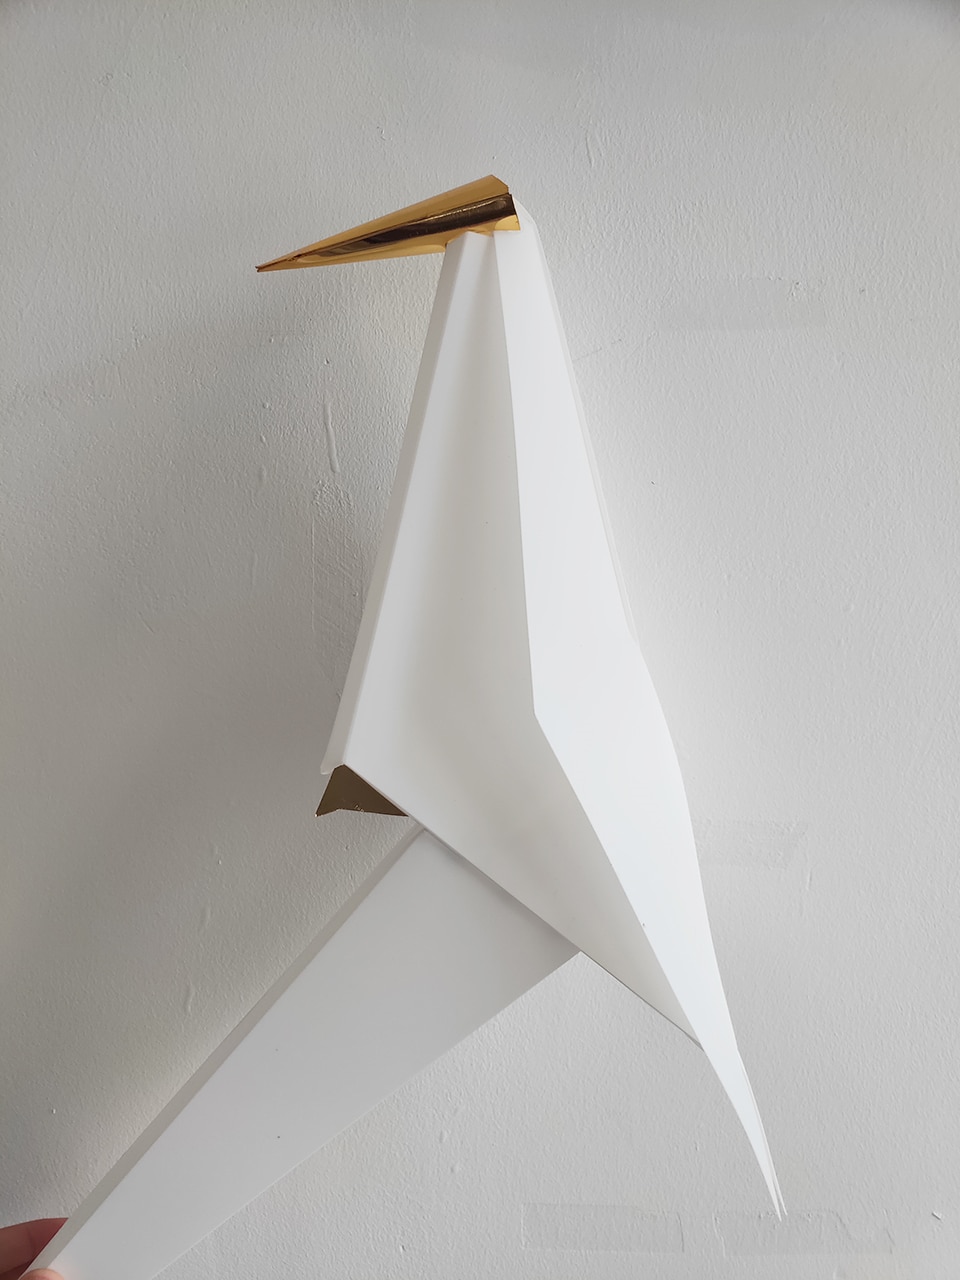 Nordic Bird LED Pendant Lights Lighting Origami Crane Bird Pendant Lamp Bedroom Living Room Dining Indoor Decor Kitchen Fixtures